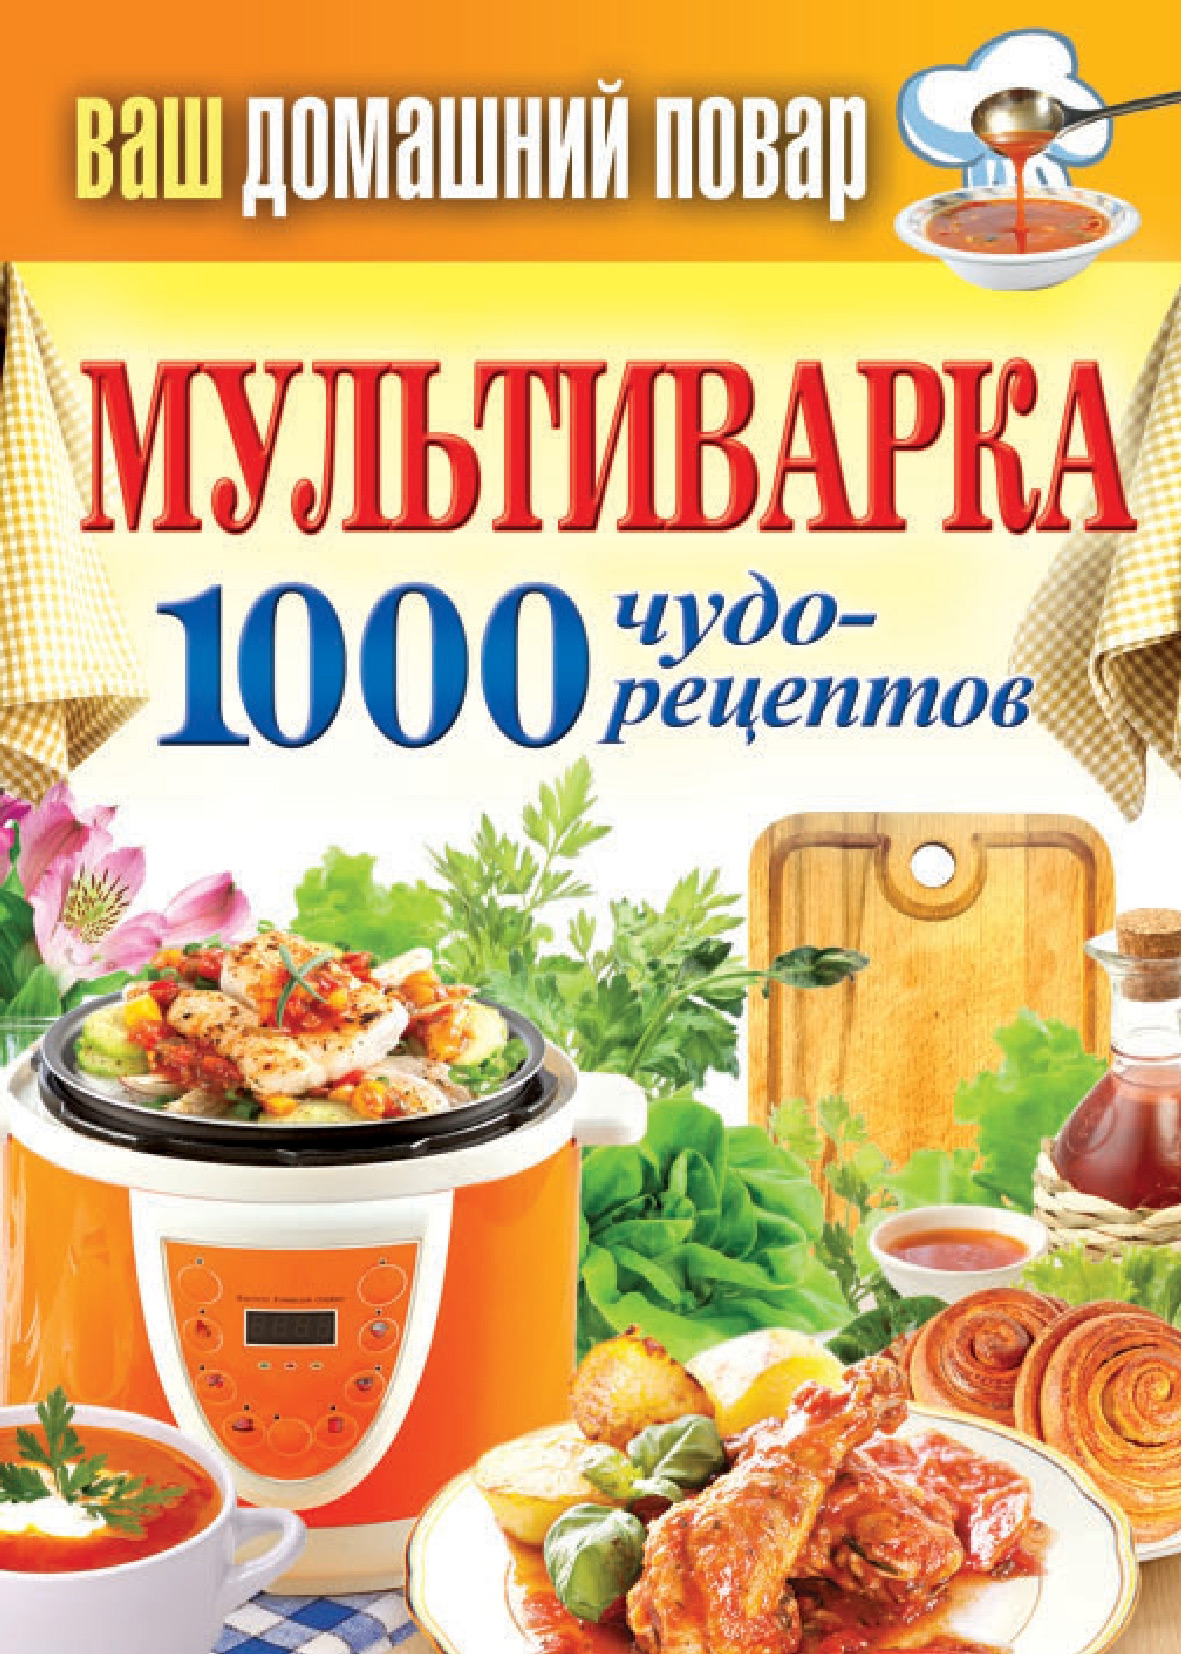 Книга Мультиварка. 1000 чудо-рецептов из серии Ваш домашний повар, созданная Сергей Кашин, может относится к жанру Кулинария. Стоимость электронной книги Мультиварка. 1000 чудо-рецептов с идентификатором 6371332 составляет 59.00 руб.